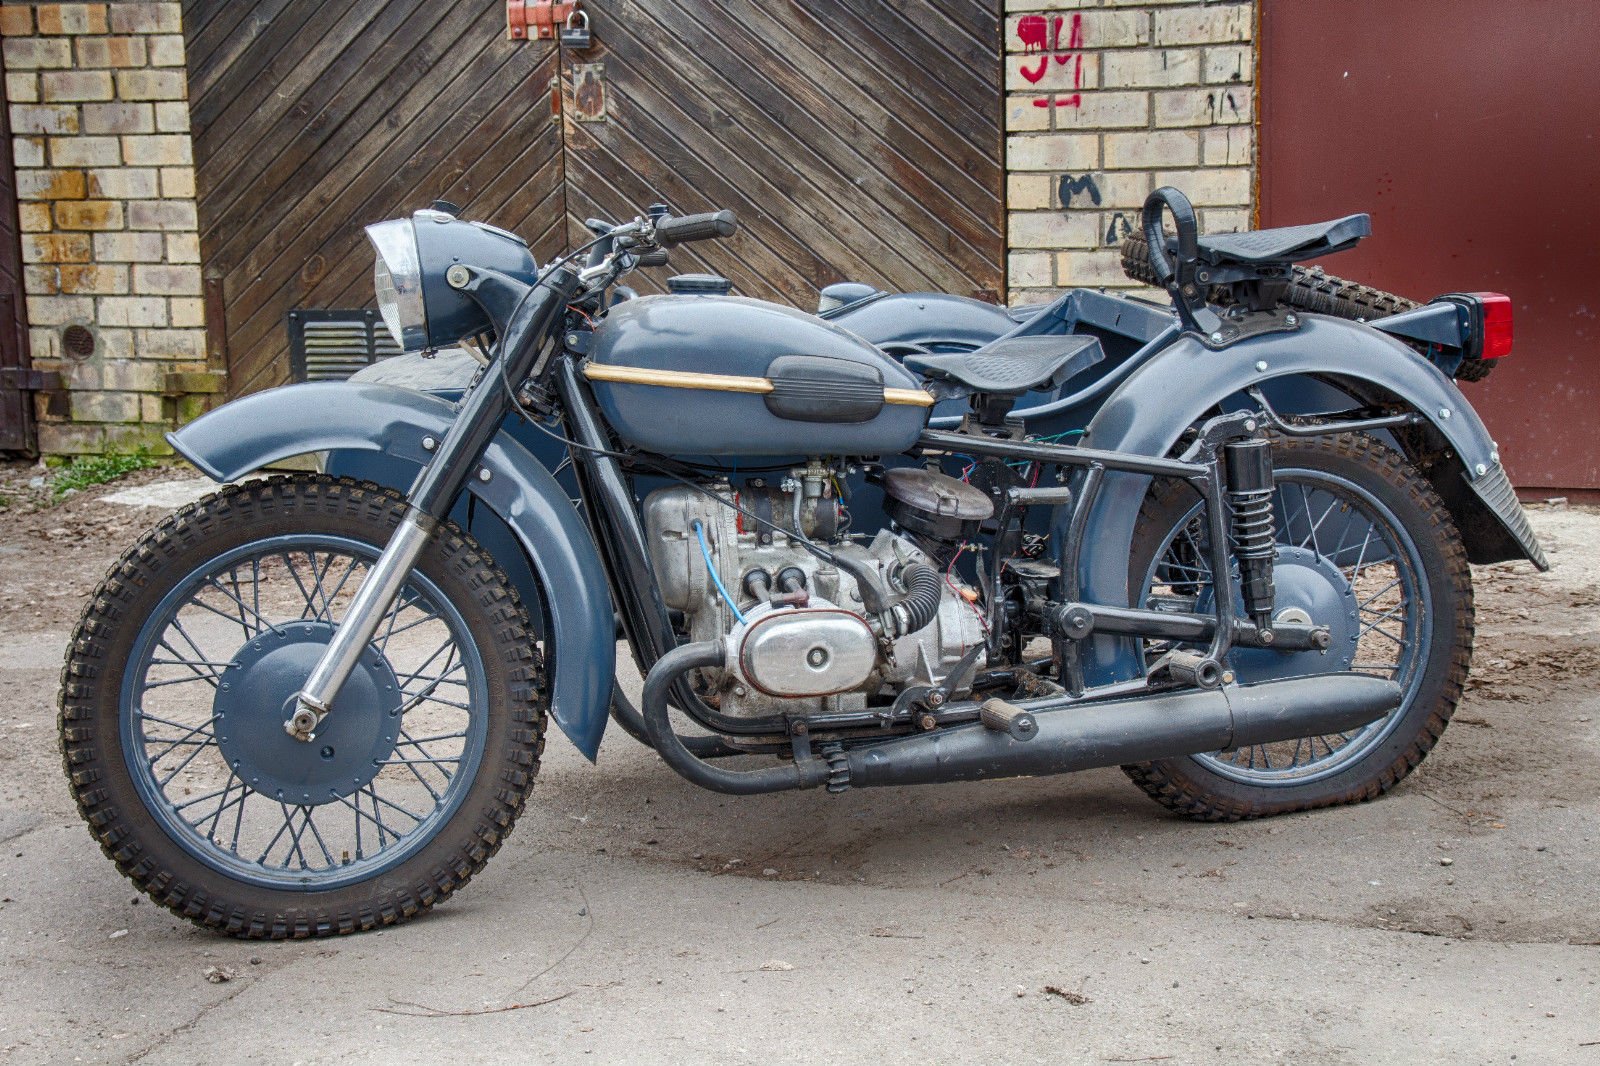 dnepr, Mt 9, Vintage, Soviet, Army, Motorcycle, Custom, Motorbike, Bike, Military Wallpaper